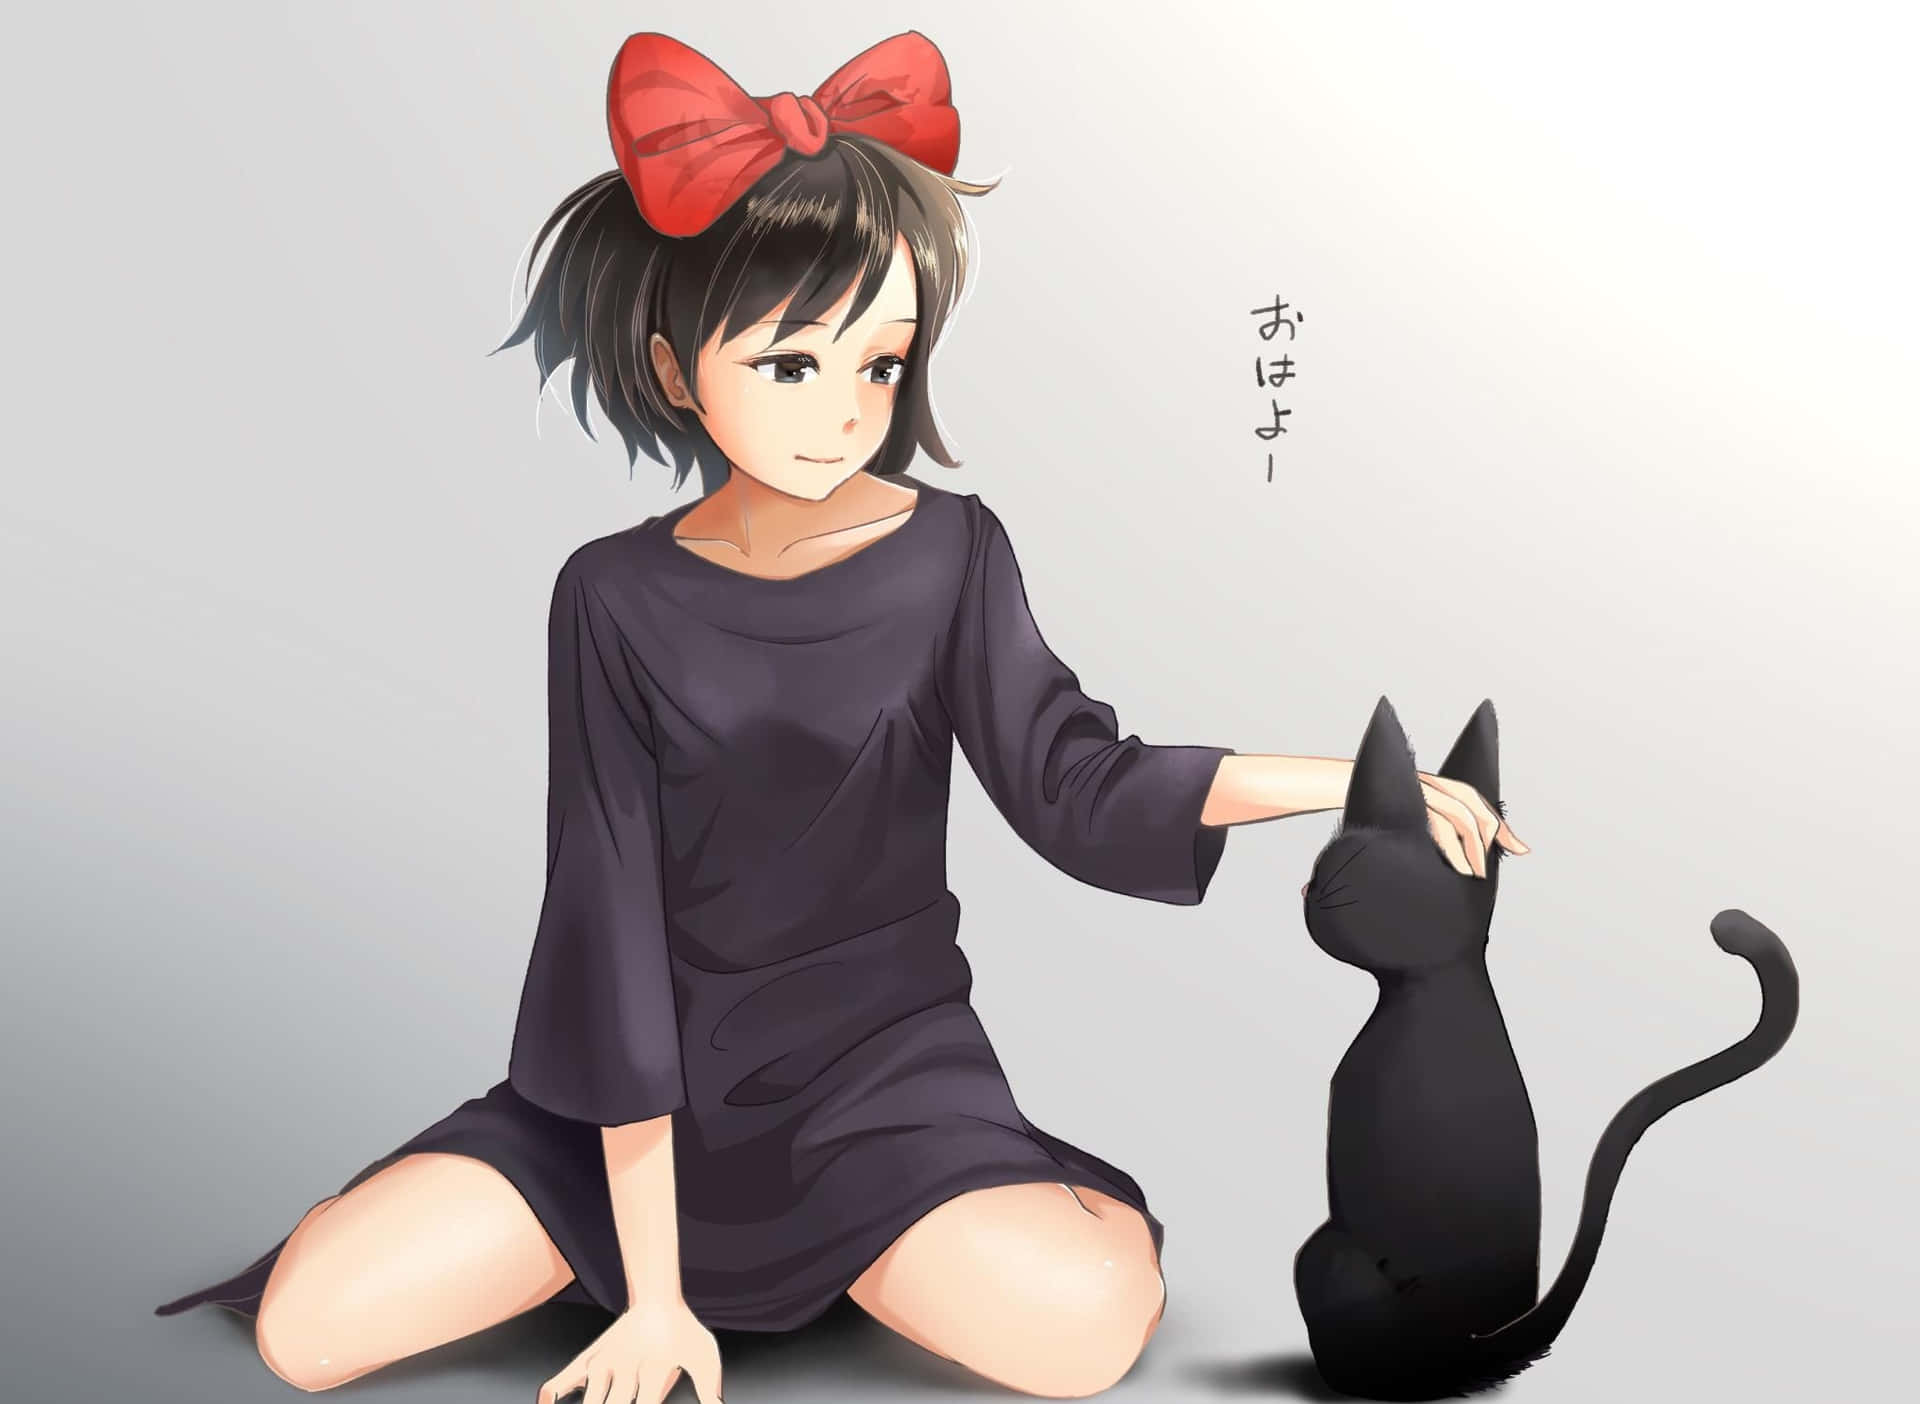 Jiji the Adorable Black Cat from Studio Ghibli's Kiki's Delivery Service Wallpaper